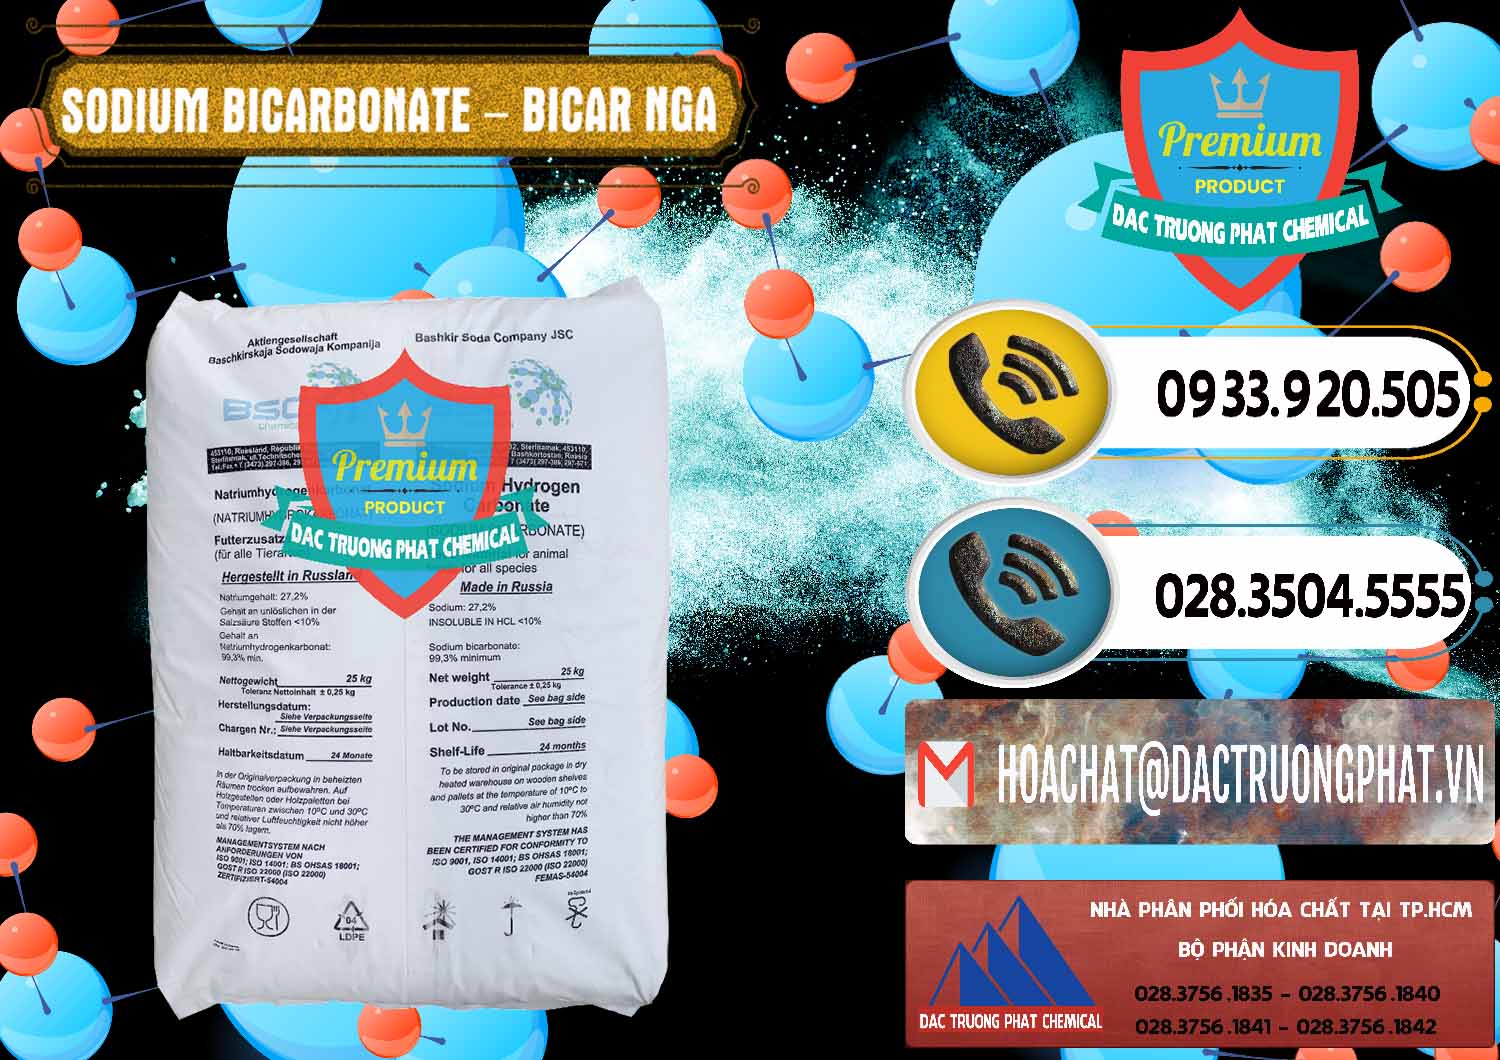 Cty bán & phân phối Sodium Bicarbonate – Bicar NaHCO3 Nga Russia - 0425 - Cty phân phối - cung cấp hóa chất tại TP.HCM - hoachatdetnhuom.vn